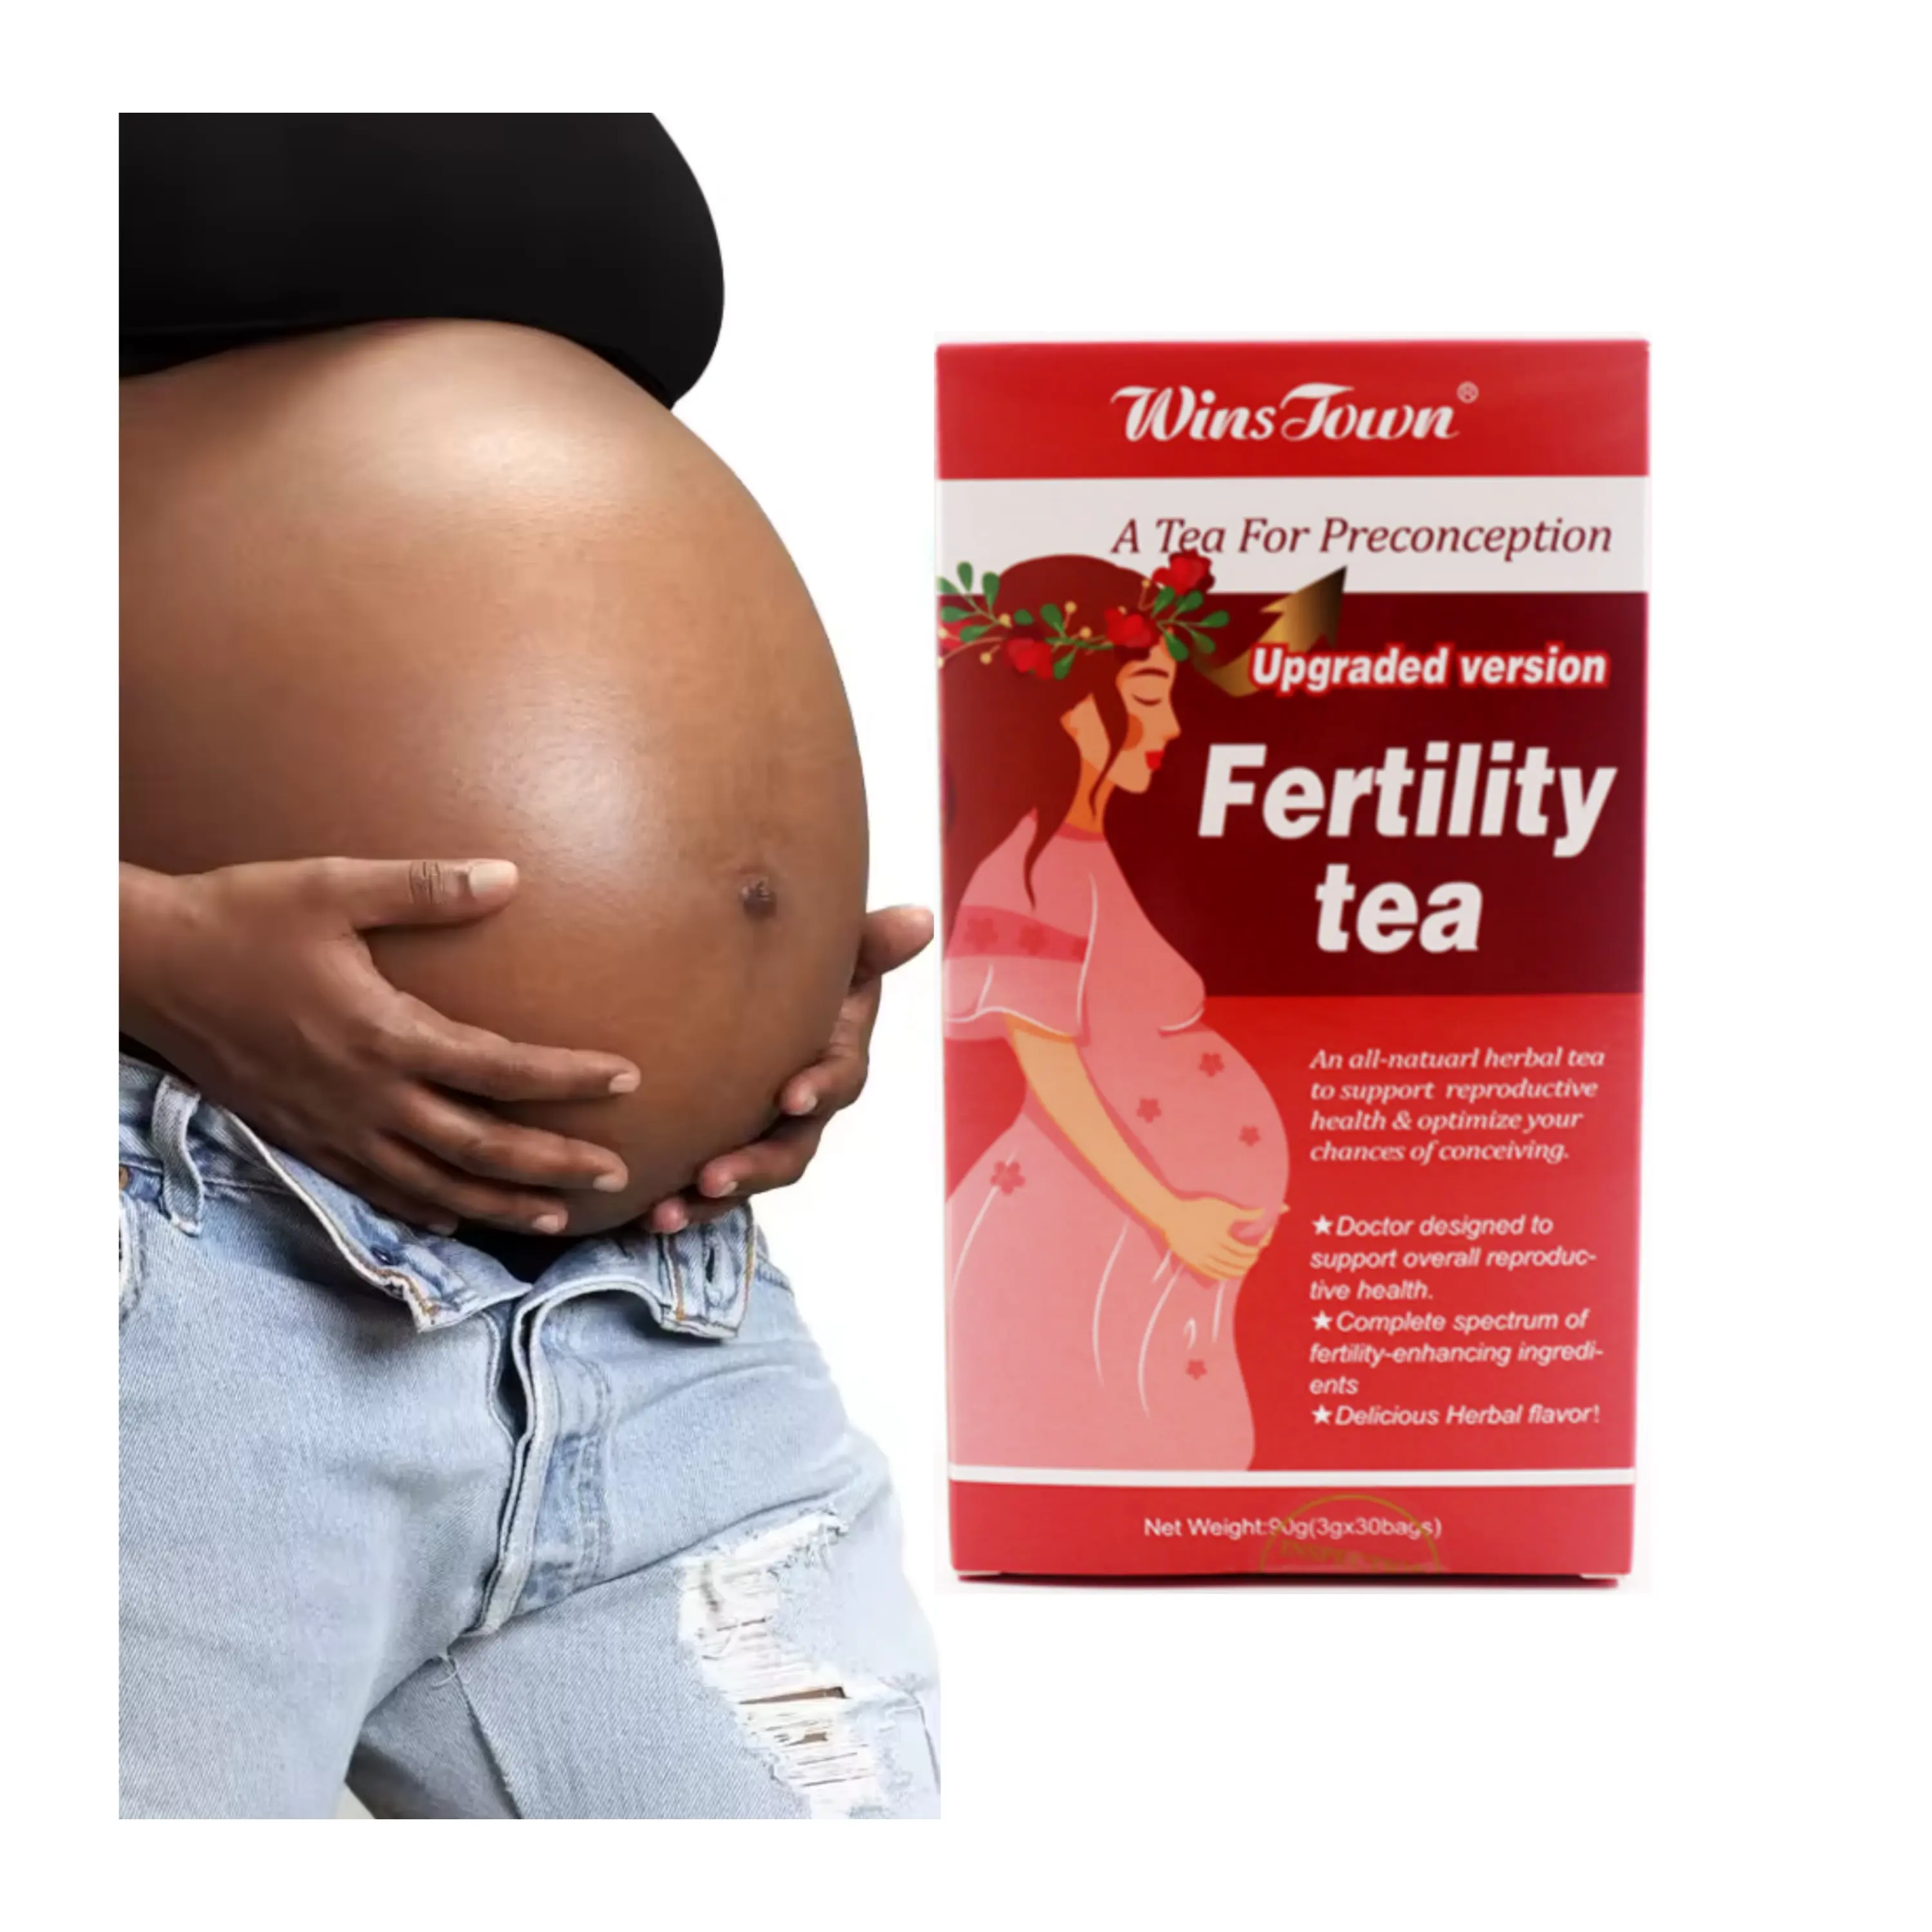 Thé de fertilité féminin thé de fibrome féminin de désintoxication pour la grossesse et les toxines utérines thé de fertilité pour femmes thé chaud de désintoxication de l'utérus pour bébé